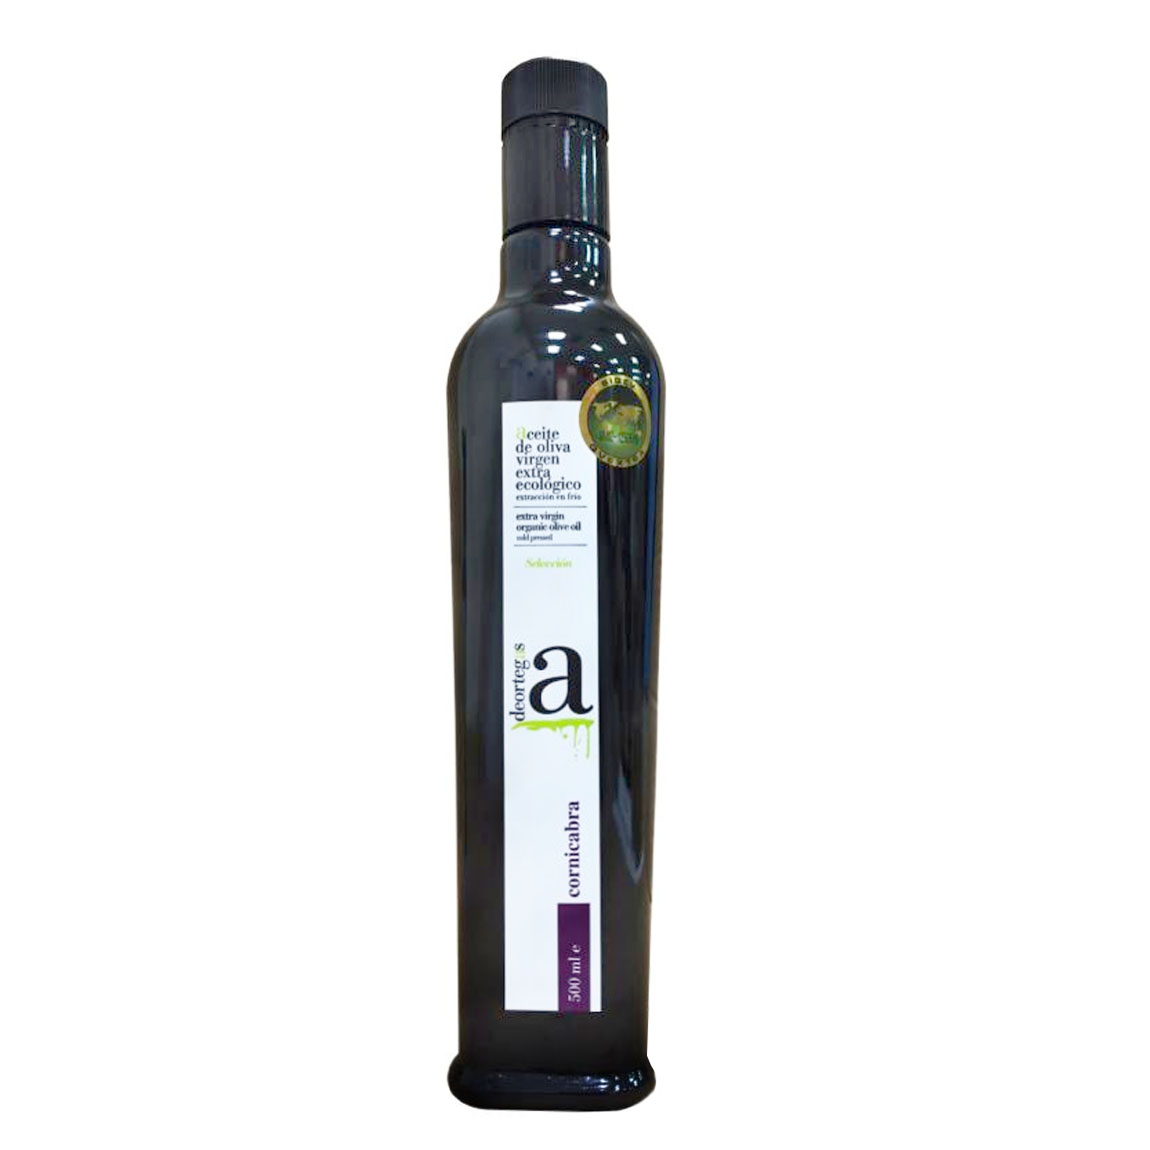 買一送一【帝歐】精選特級初榨橄欖油(CORNICABRA) 500ML 